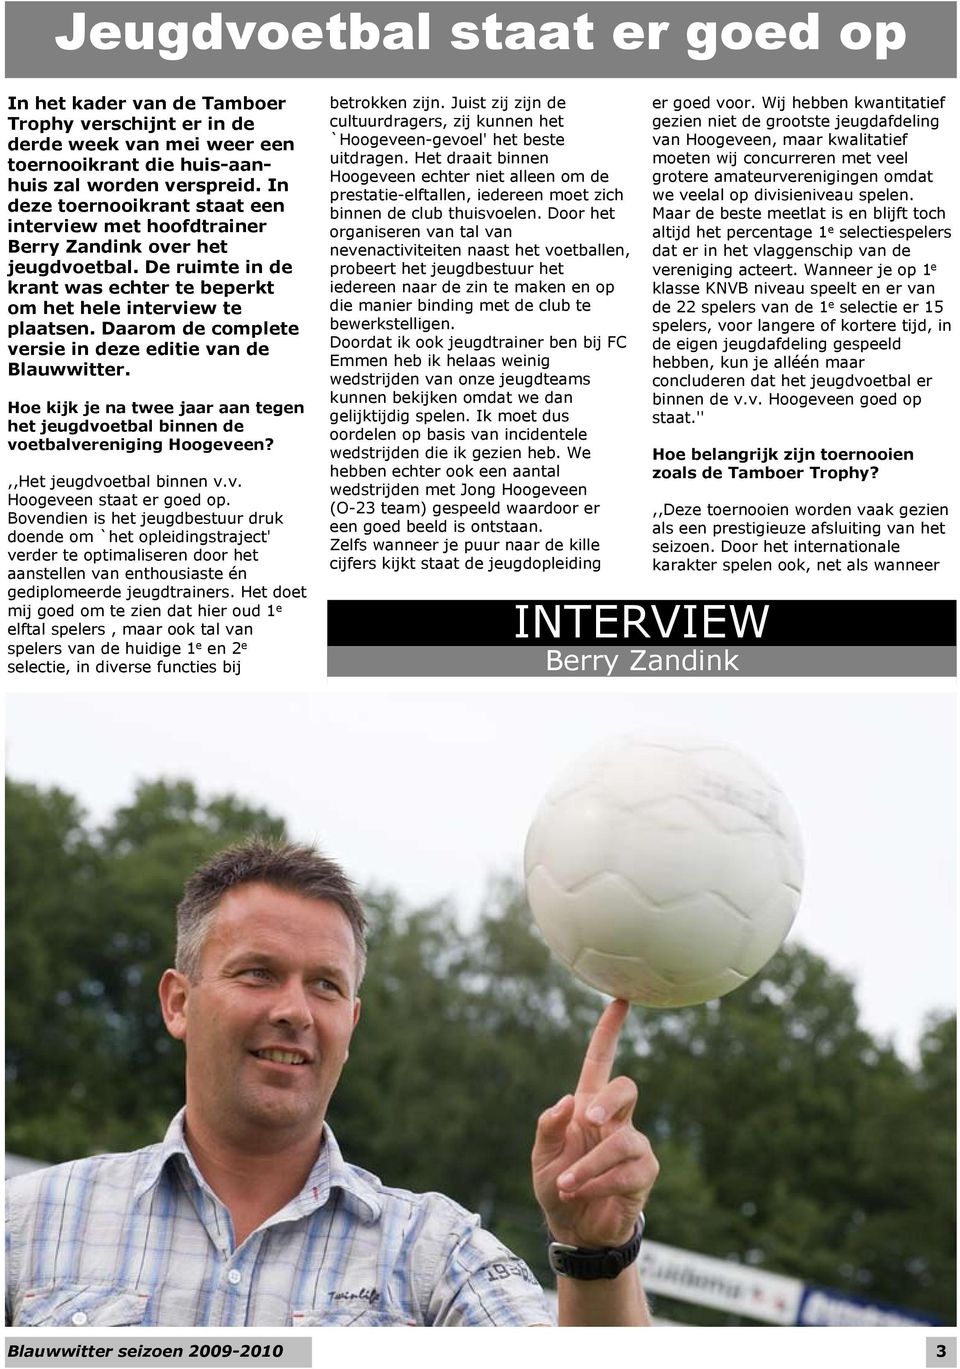 Daarom de complete versie in deze editie van de Blauwwitter. Hoe kijk je na twee jaar aan tegen het jeugdvoetbal binnen de voetbalvereniging Hoogeveen?,,Het jeugdvoetbal binnen v.v. Hoogeveen staat er goed op.